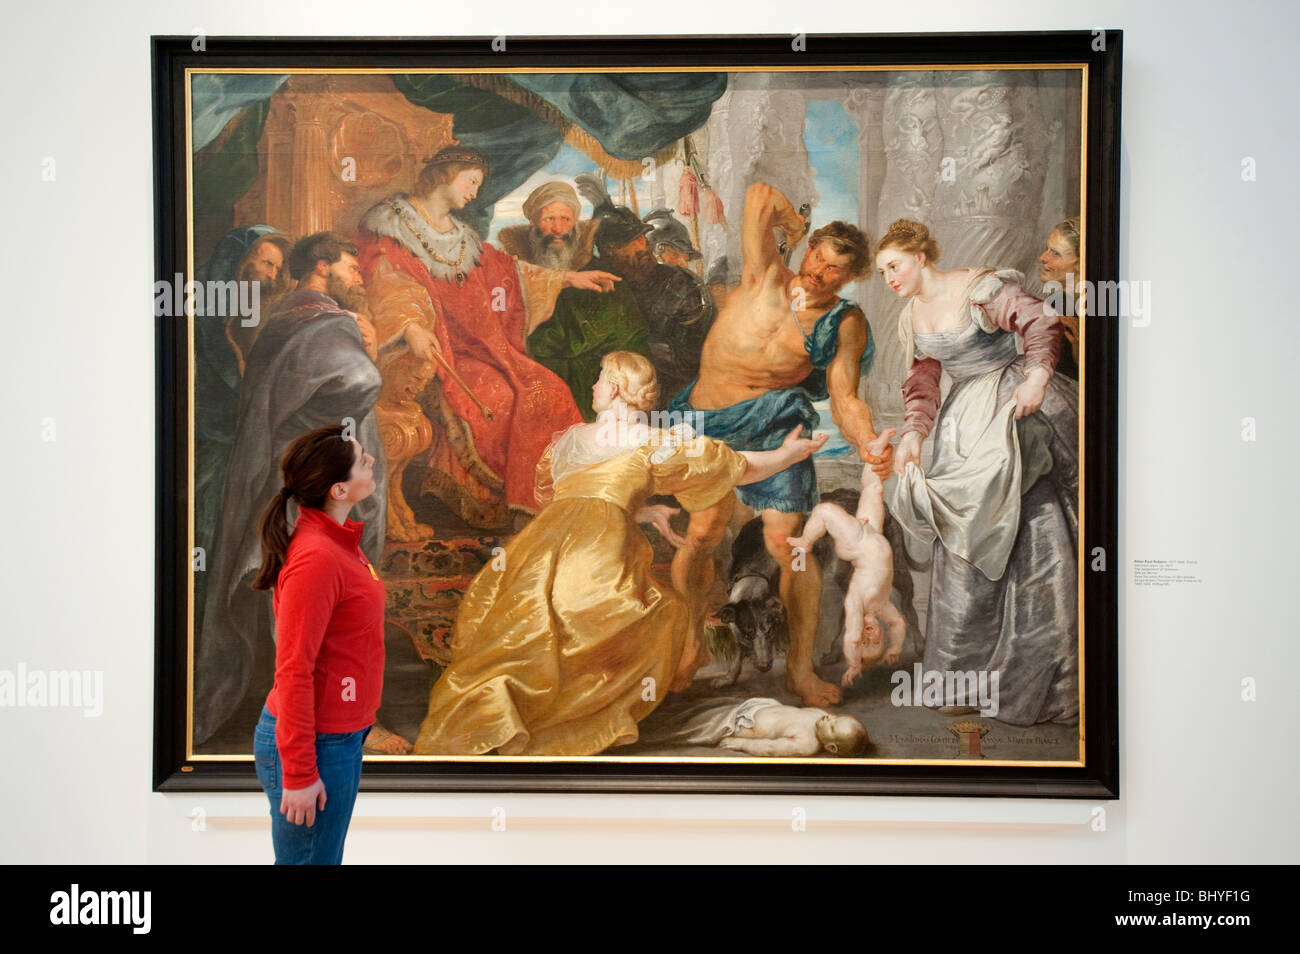 Das Urteil des Salomo von Rubens bei Statens Museum für Kunst oder Königliches Museum der schönen Künste in Kopenhagen Dänemark Stockfoto